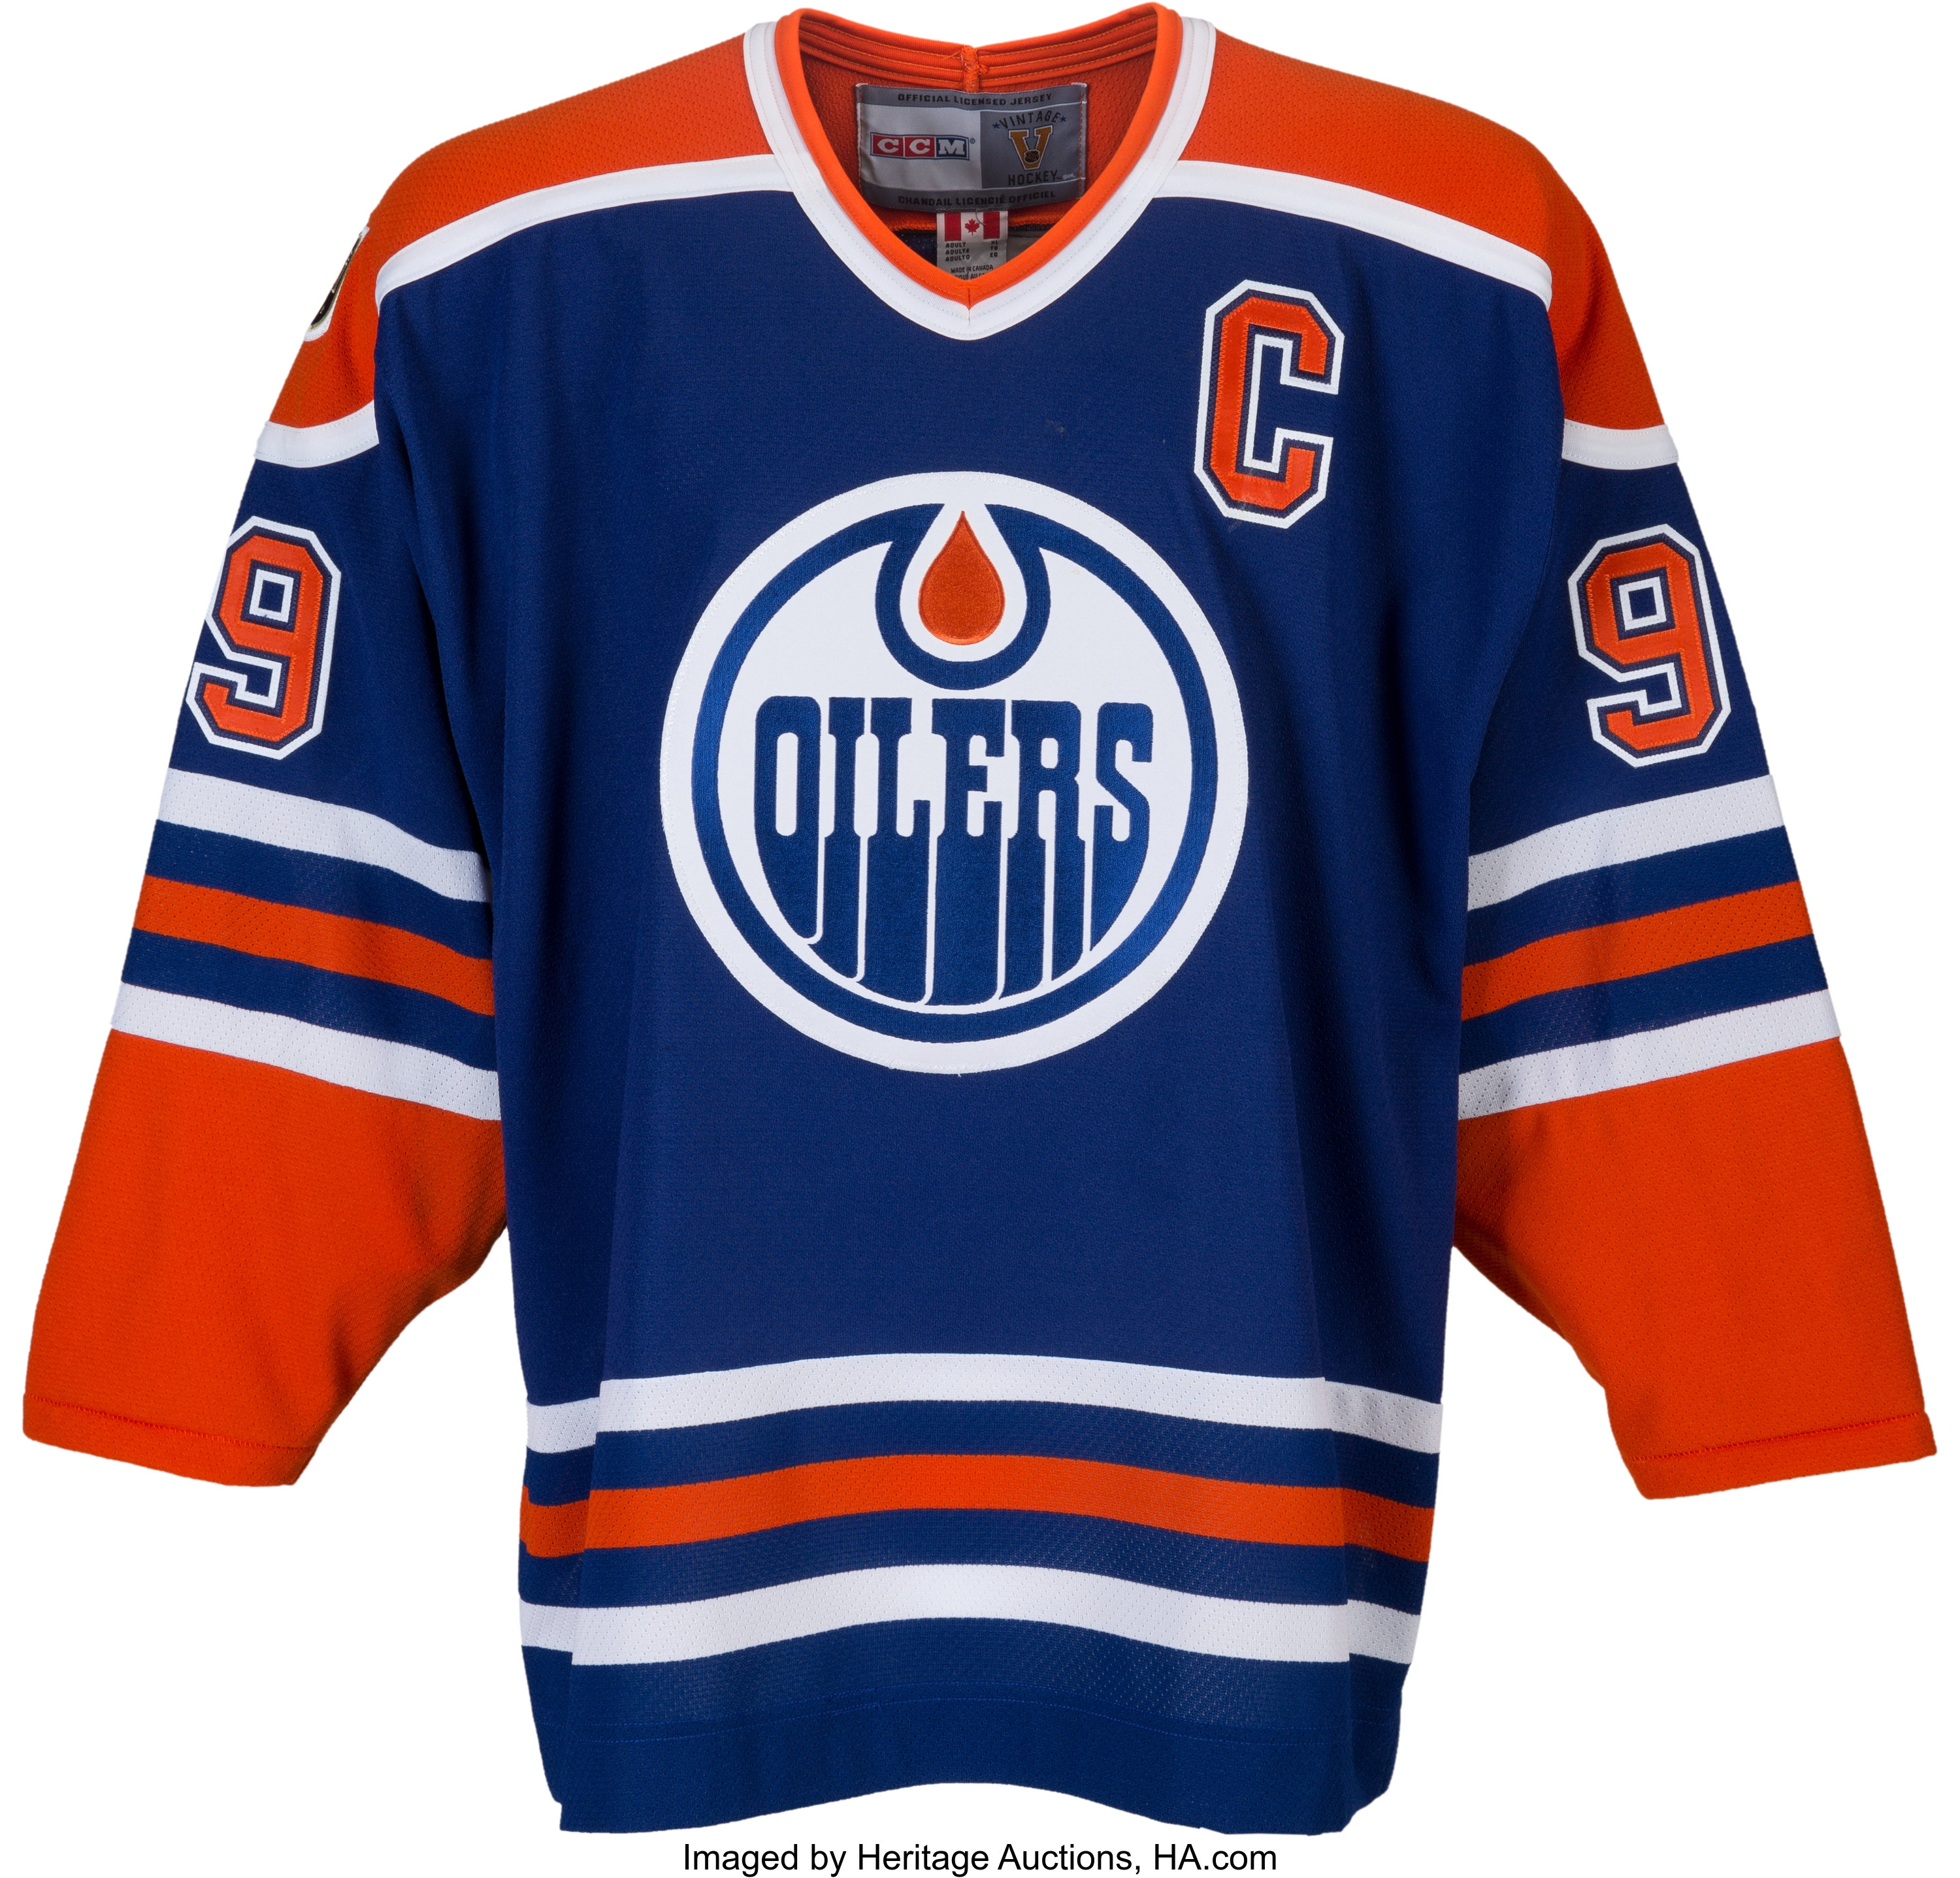 Edmonton Oilers Heritage Classic Jersey Released! 